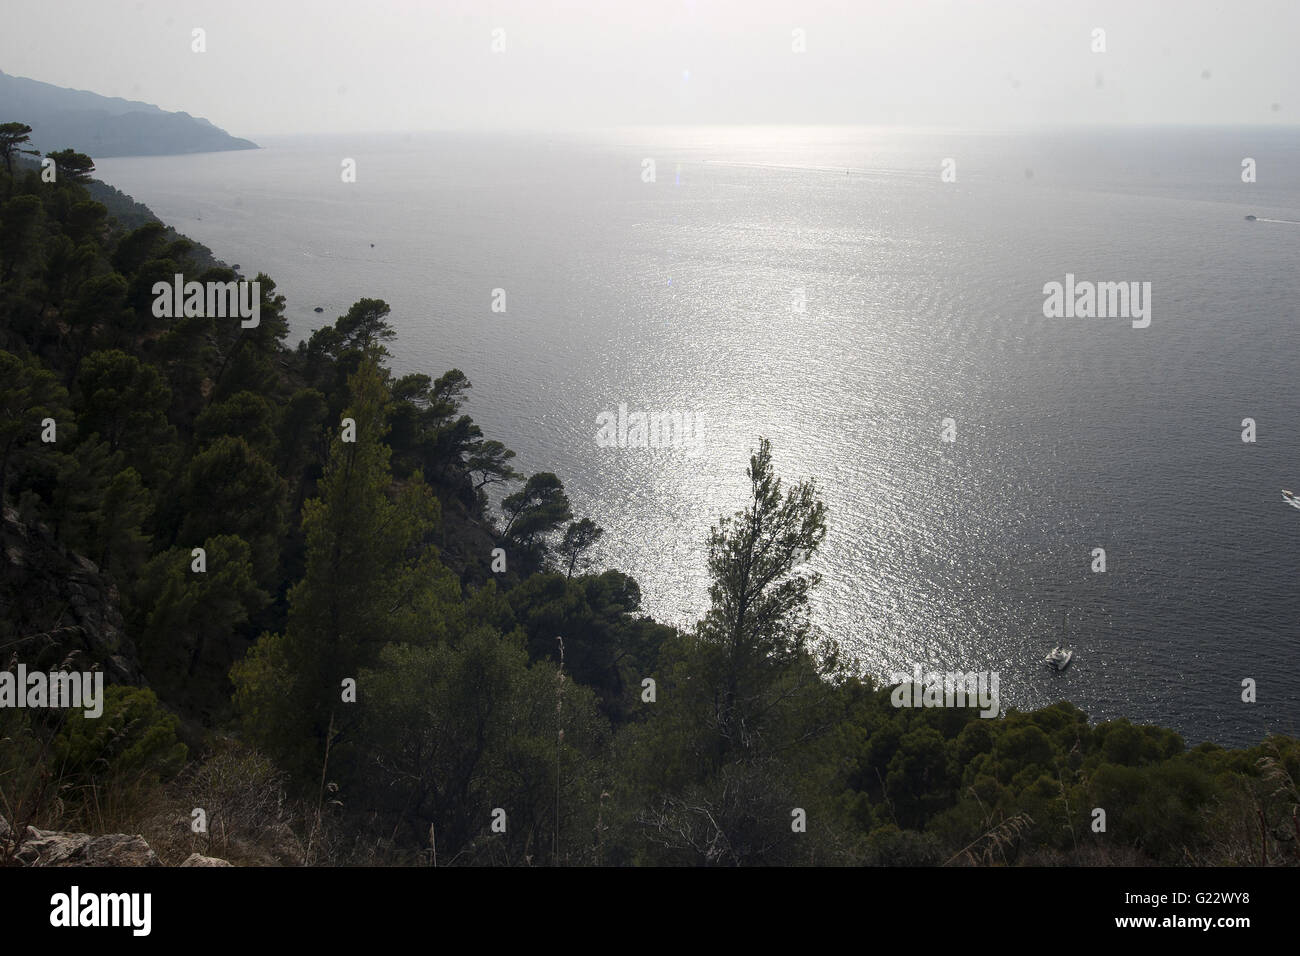 Una bella immagine della coste nebuloso mare blu con vegetazione in primo piano in Palma de Mallorca, Spagna, mare turismo Foto Stock